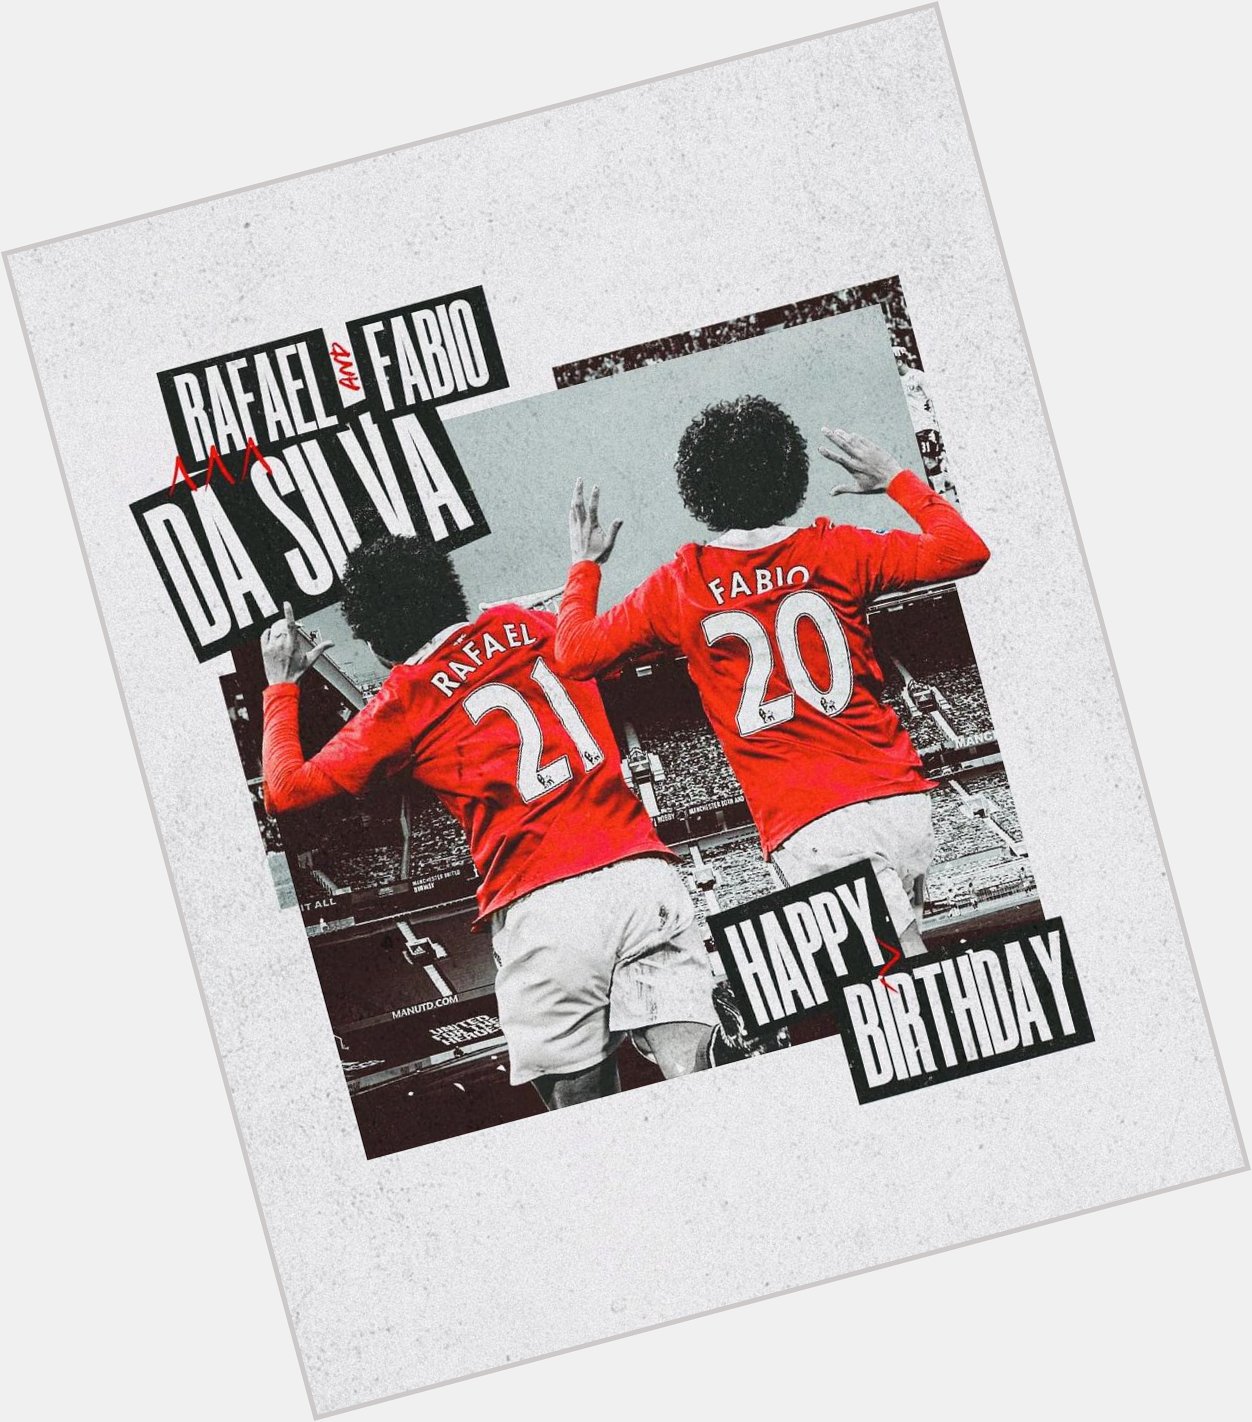 Manchester United !!

Happy 31st birthday to Rafael da Silva and Fabio Da Silva 